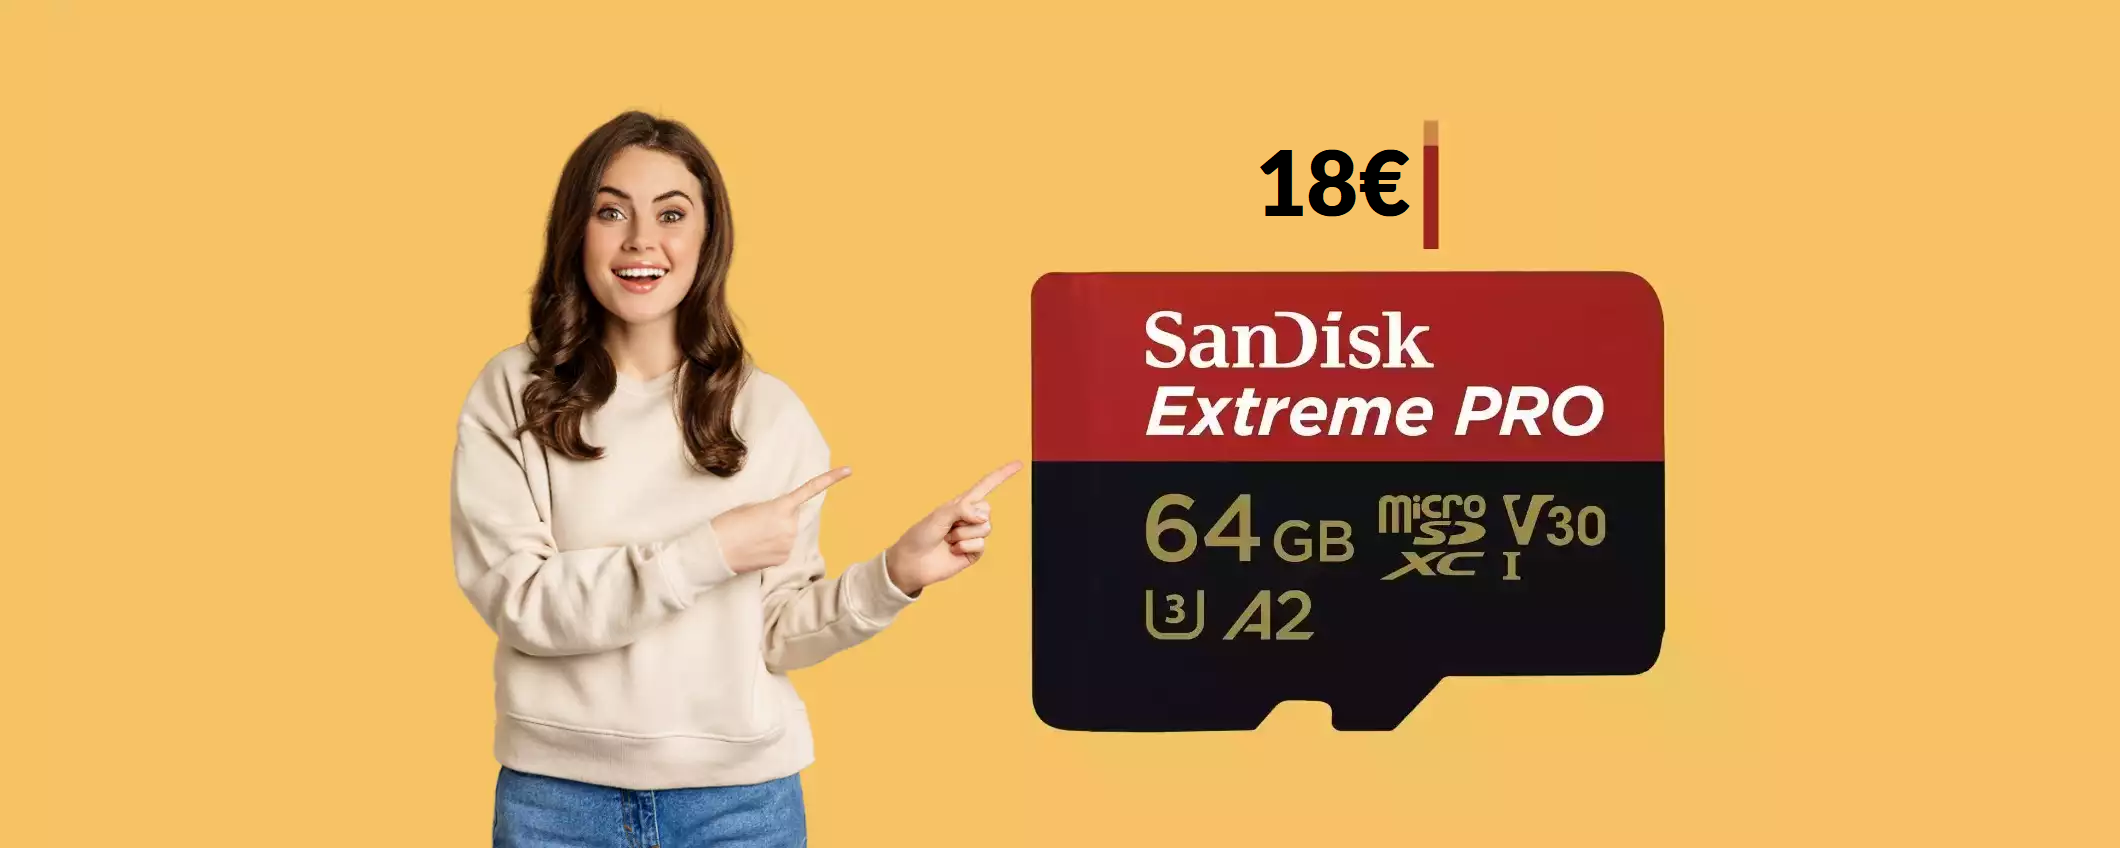 MicroSD 64GB SanDisk: SVENDITA totale a prezzo ridicolo (18€)